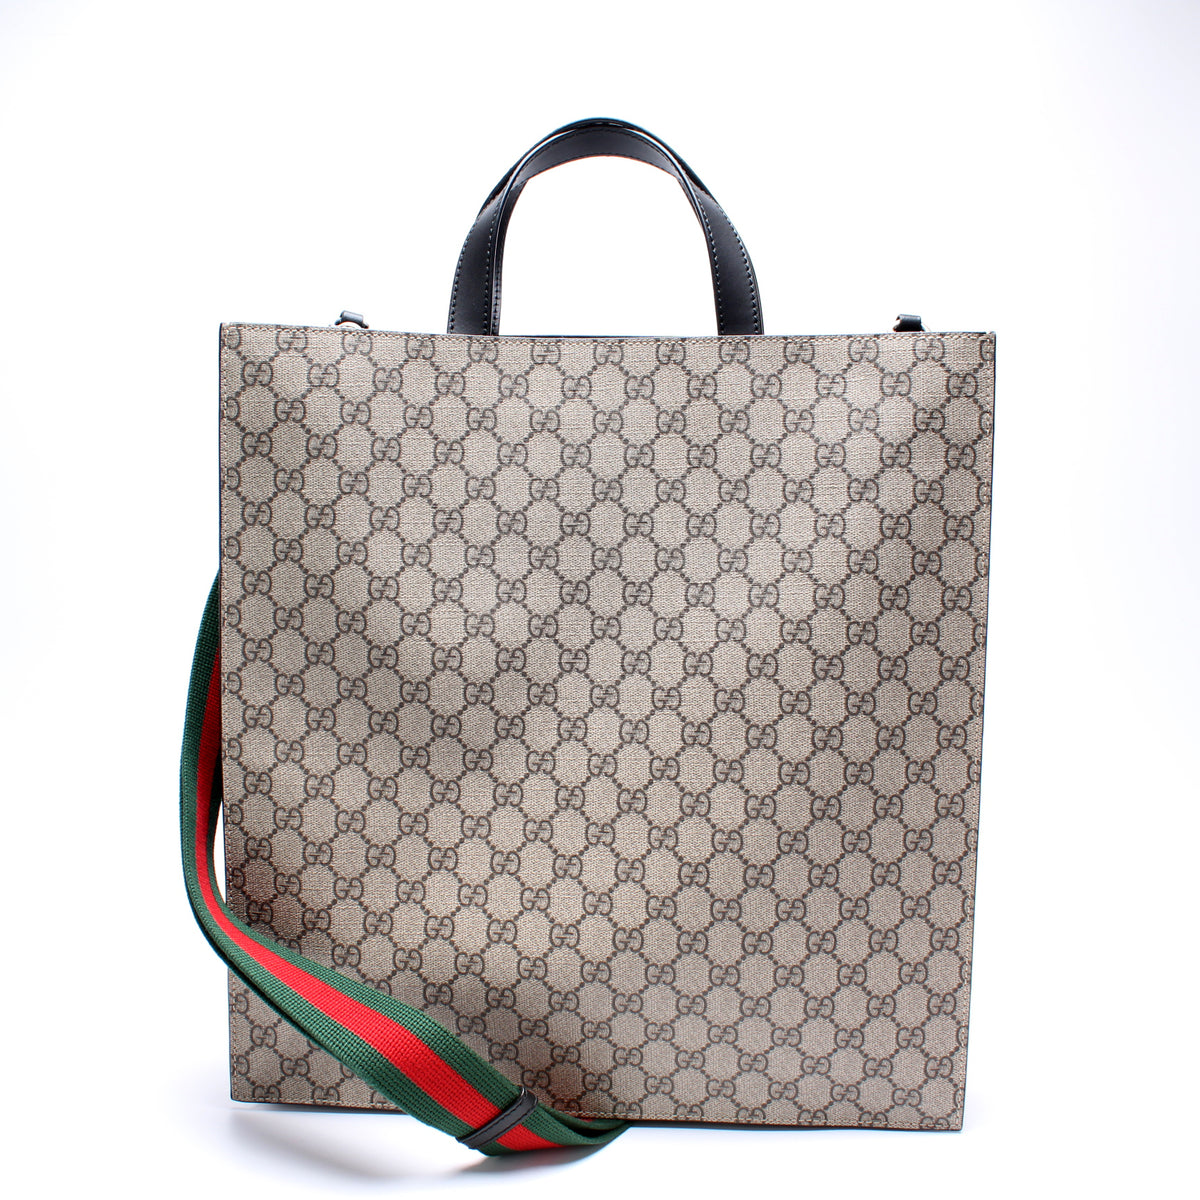 Gucci Men's GG Supreme Tote Bag